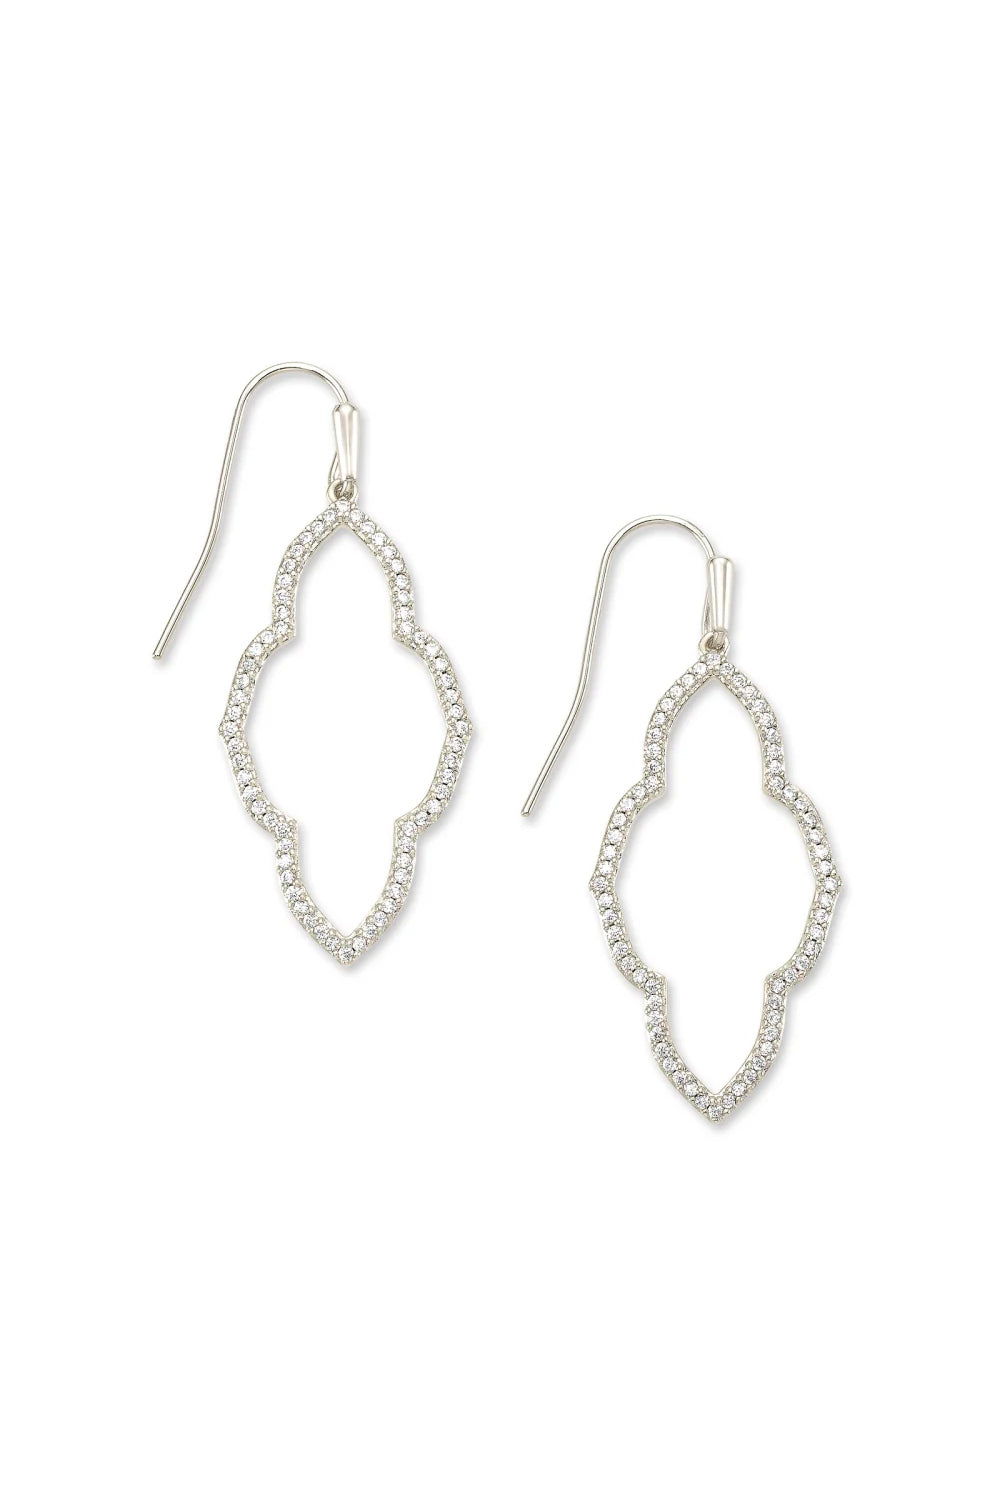 Kendra Scott: Abbie Silver Small Open Frame Earrings - White Crystal | Makk Fashions